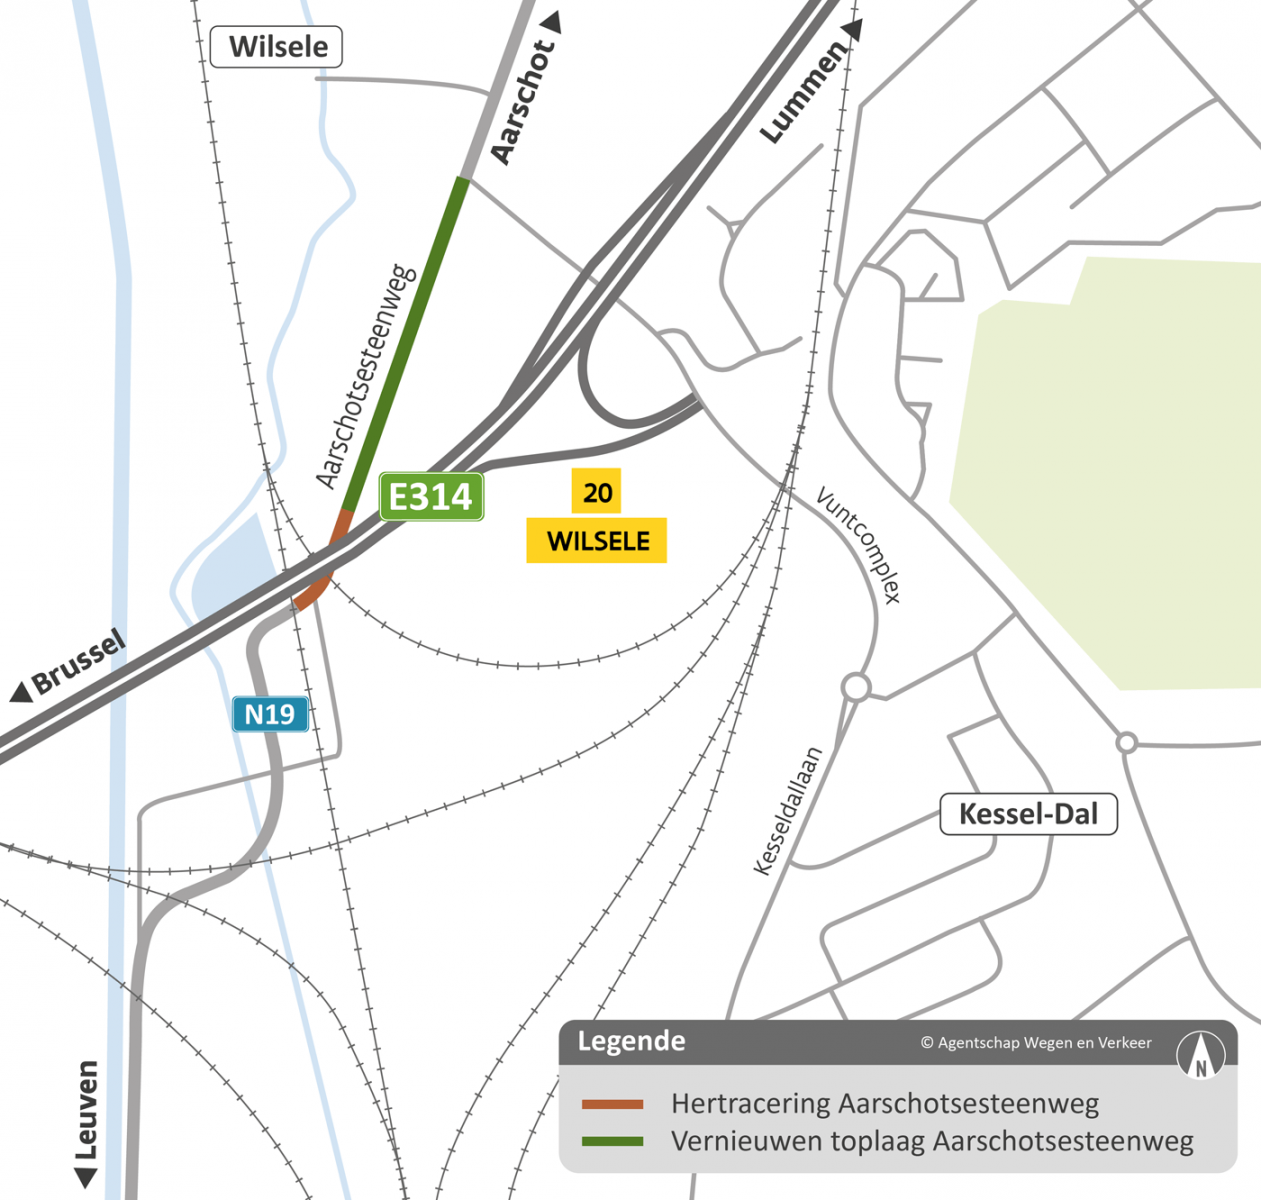 Situeringskaart Aarschotsesteenweg Leuven Noord